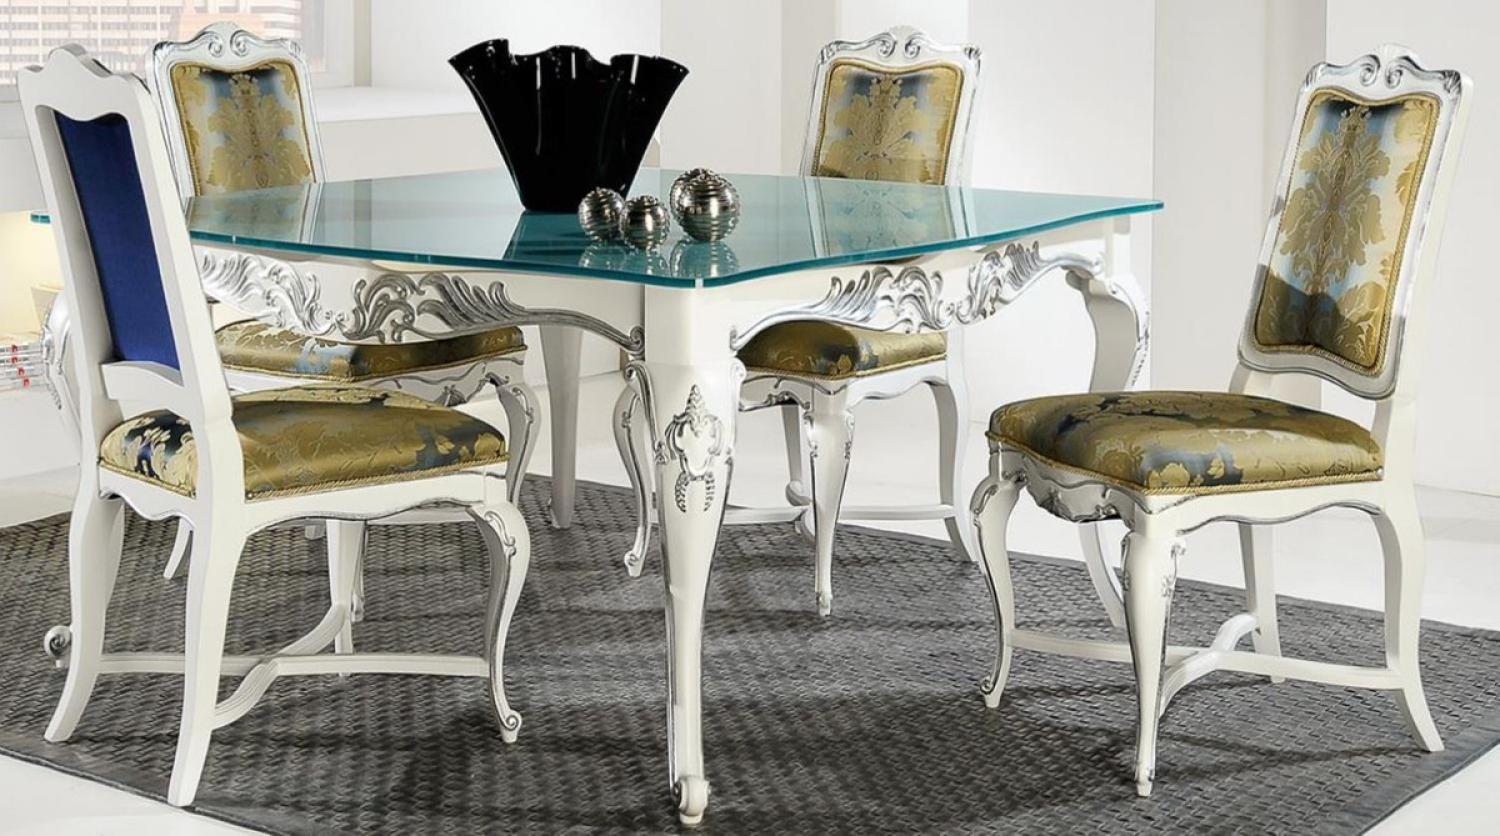 Casa Padrino Luxus Barock Esszimmer Set Gold / Weiß / Silber - Verschiedene Tischgrößen - 1 Esstisch mit Glasplatte & 4 Esszimmerstühle - Edle Barock Esszimmer Möbel Bild 1